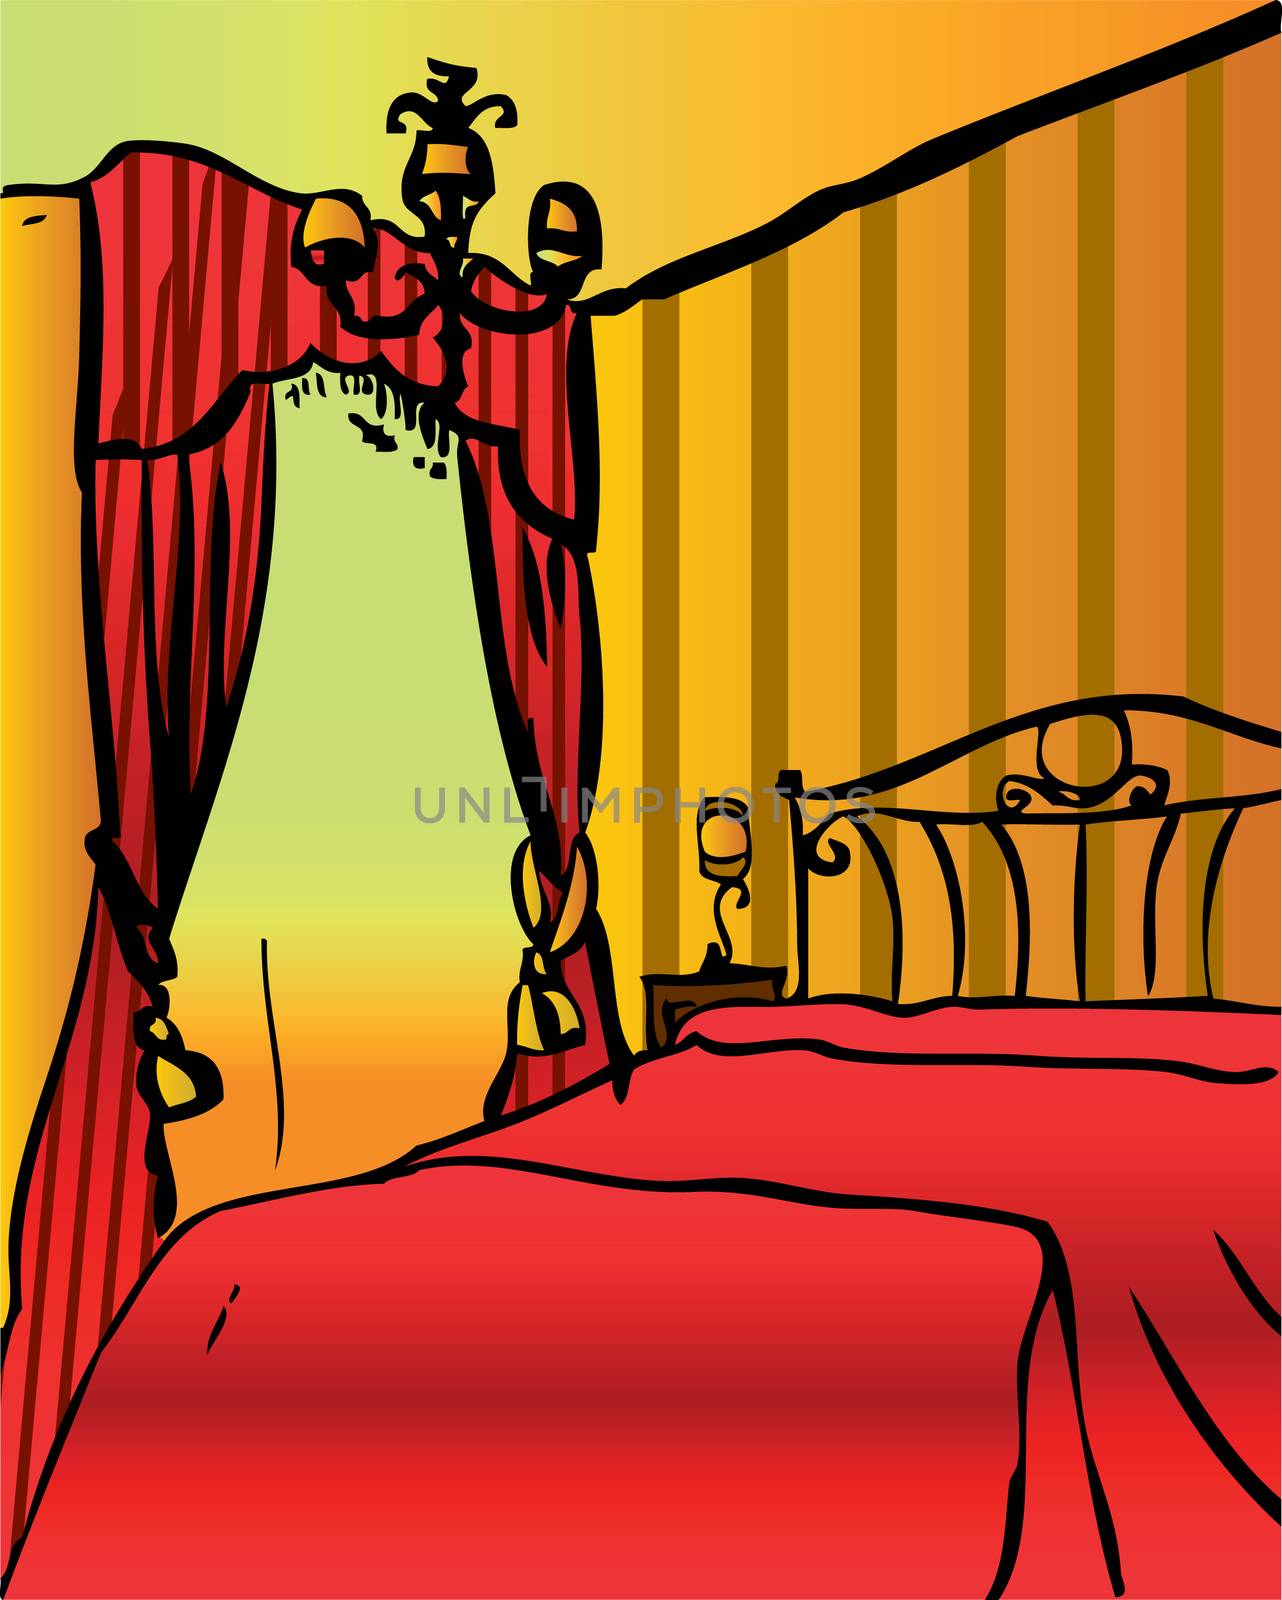 bedroom interior, vector home, hotel illustration